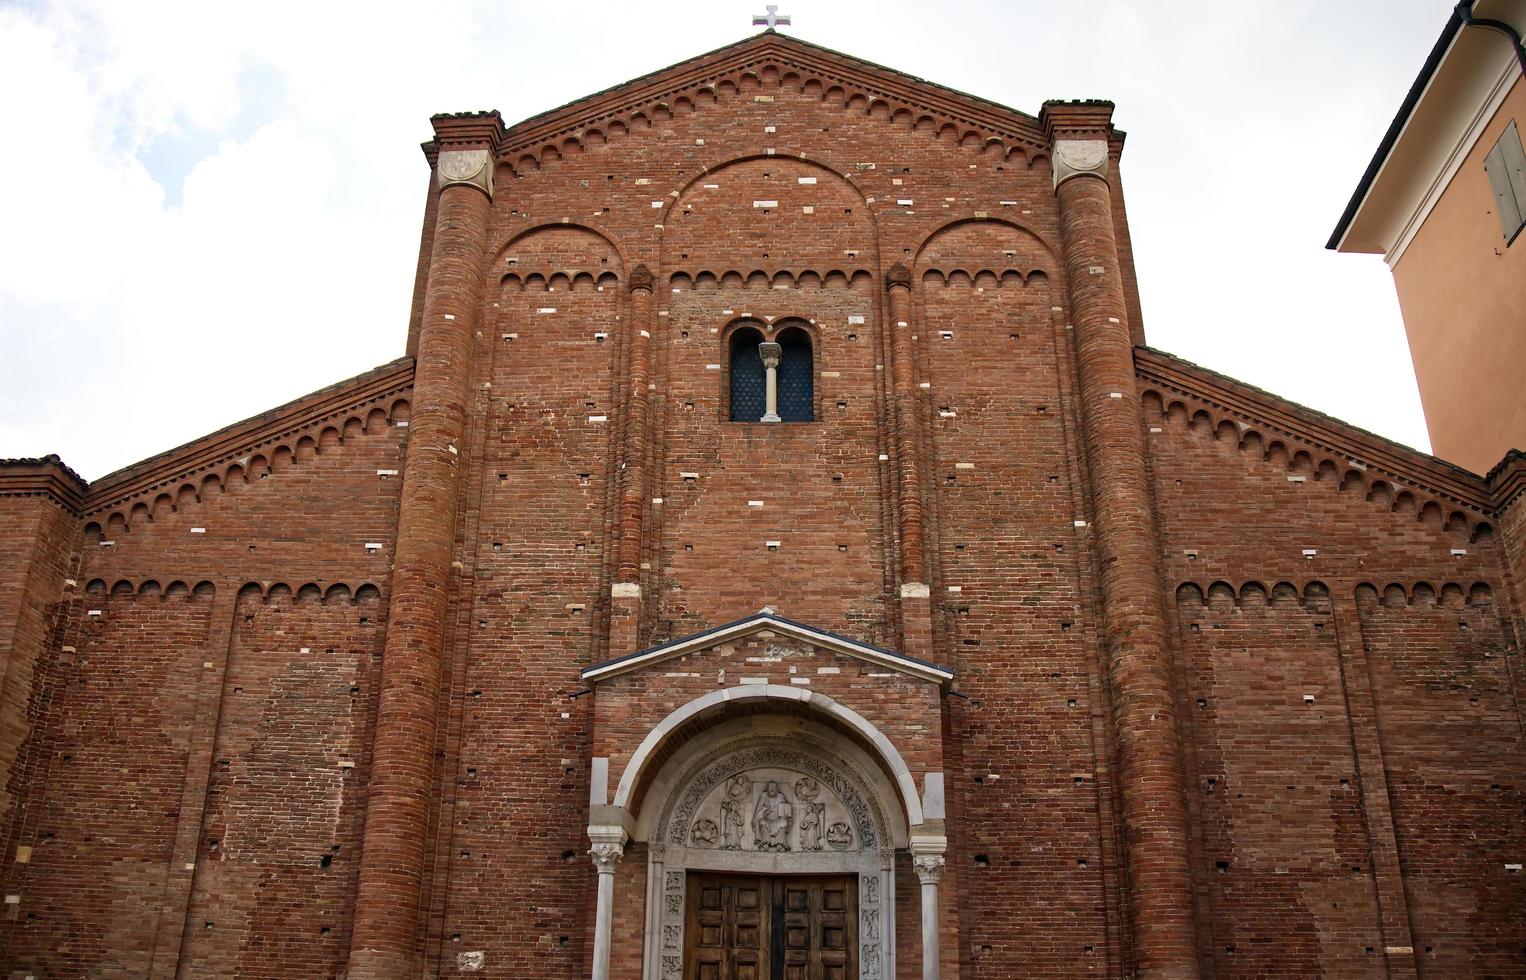 Facade of the famous medieval Abbey of Nonantola, Abbazia di Nonantola. Modena. Italy photo